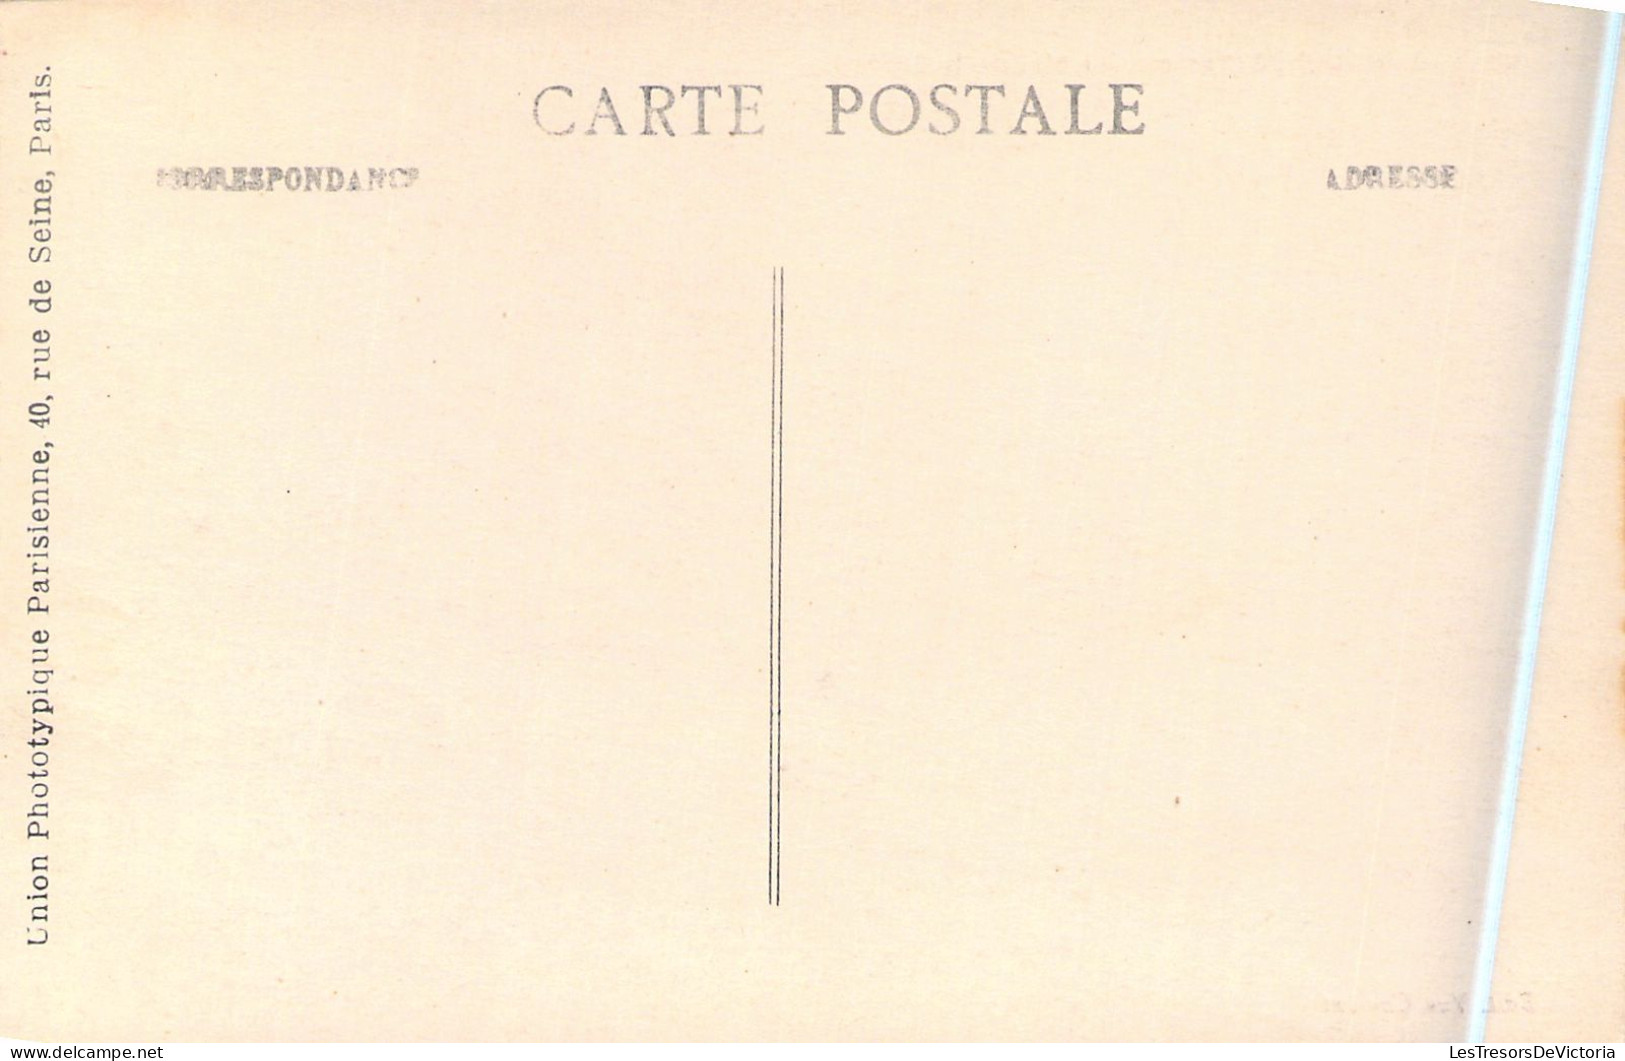 FRANCE - 80 - CHAULNES - Hôtel De La Gare - Carte Postale Ancienne - Chaulnes